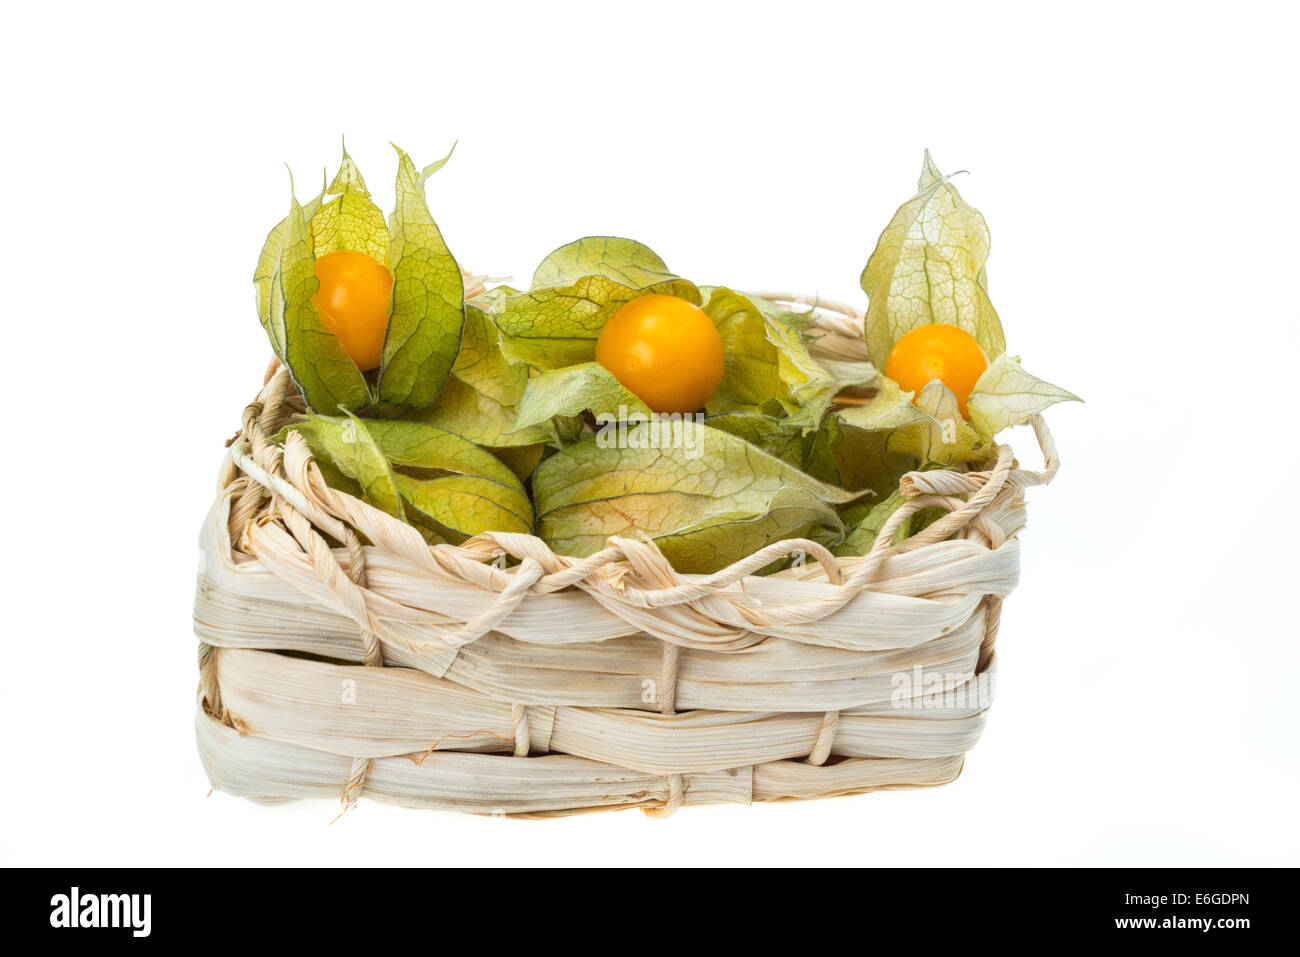 Physalis Früchte in einem Korb, auch bekannt als Kap-Stachelbeere oder Winterkirsche - Studio gedreht mit weißem Hintergrund Stockfoto